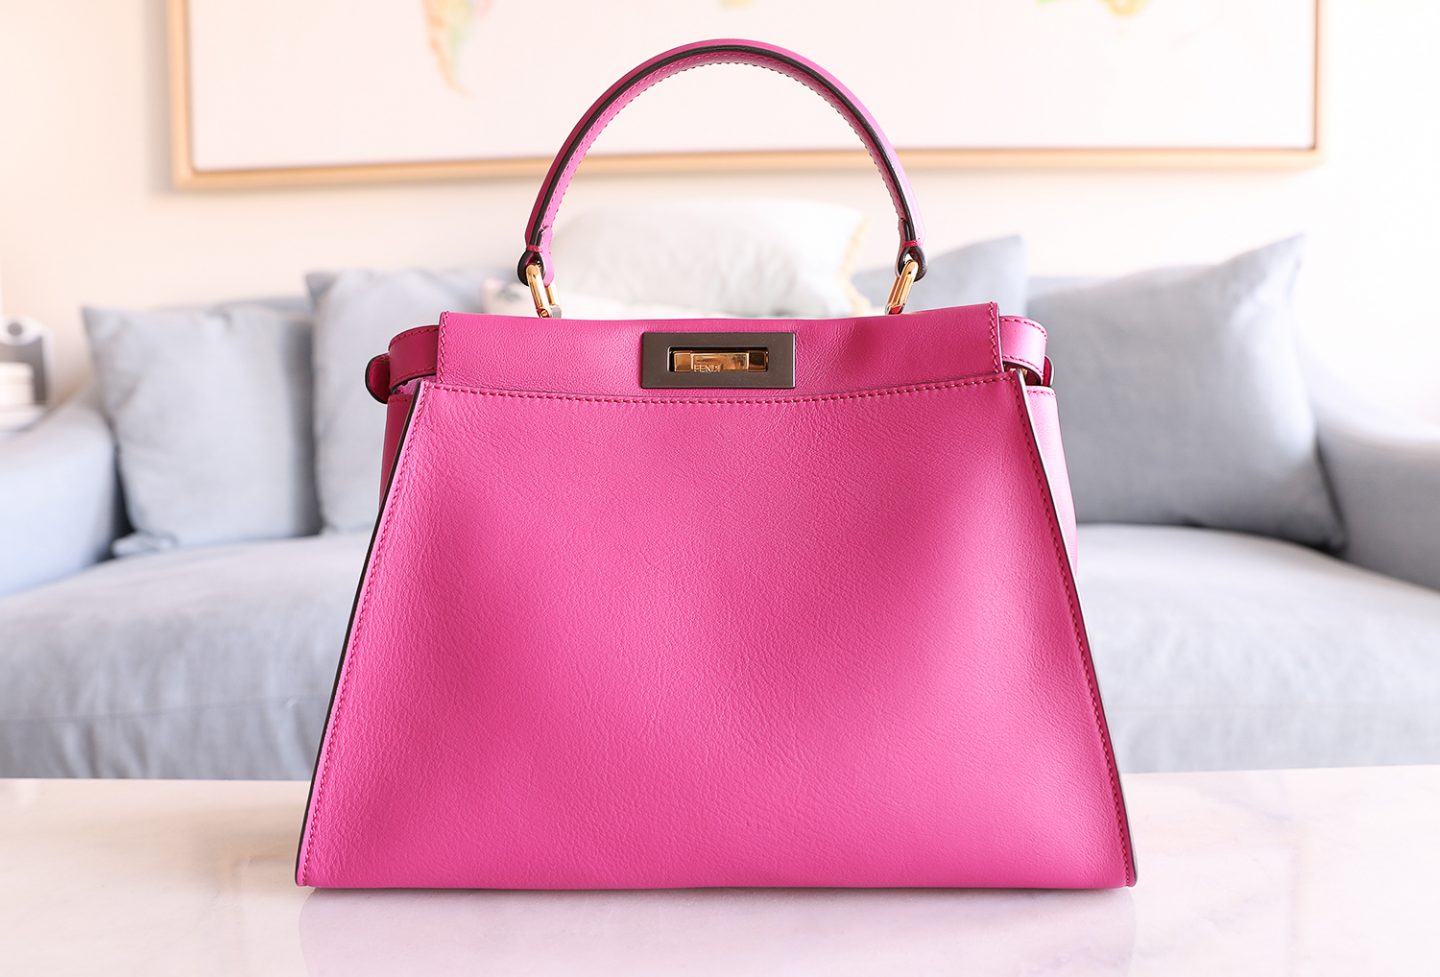 HUGE Luxury Bag Sale - Chase Amie